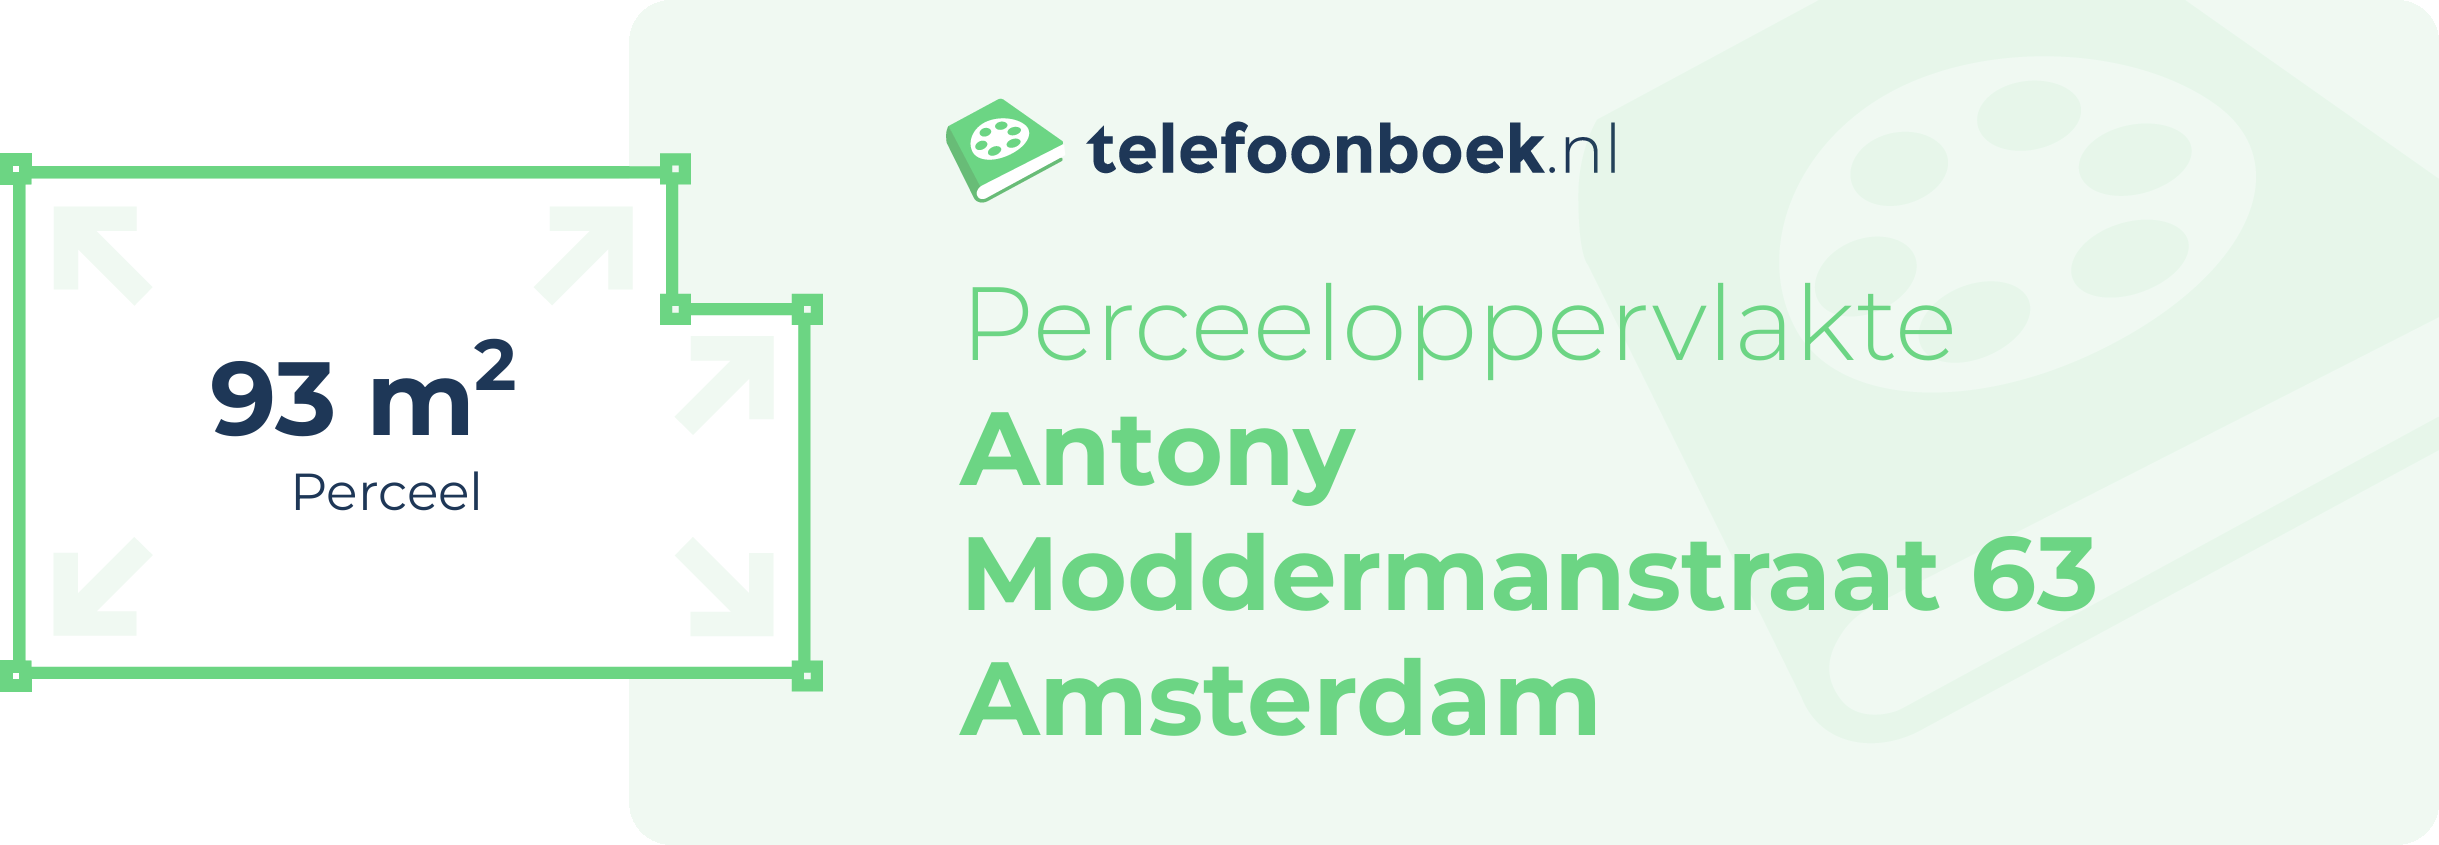 Perceeloppervlakte Antony Moddermanstraat 63 Amsterdam